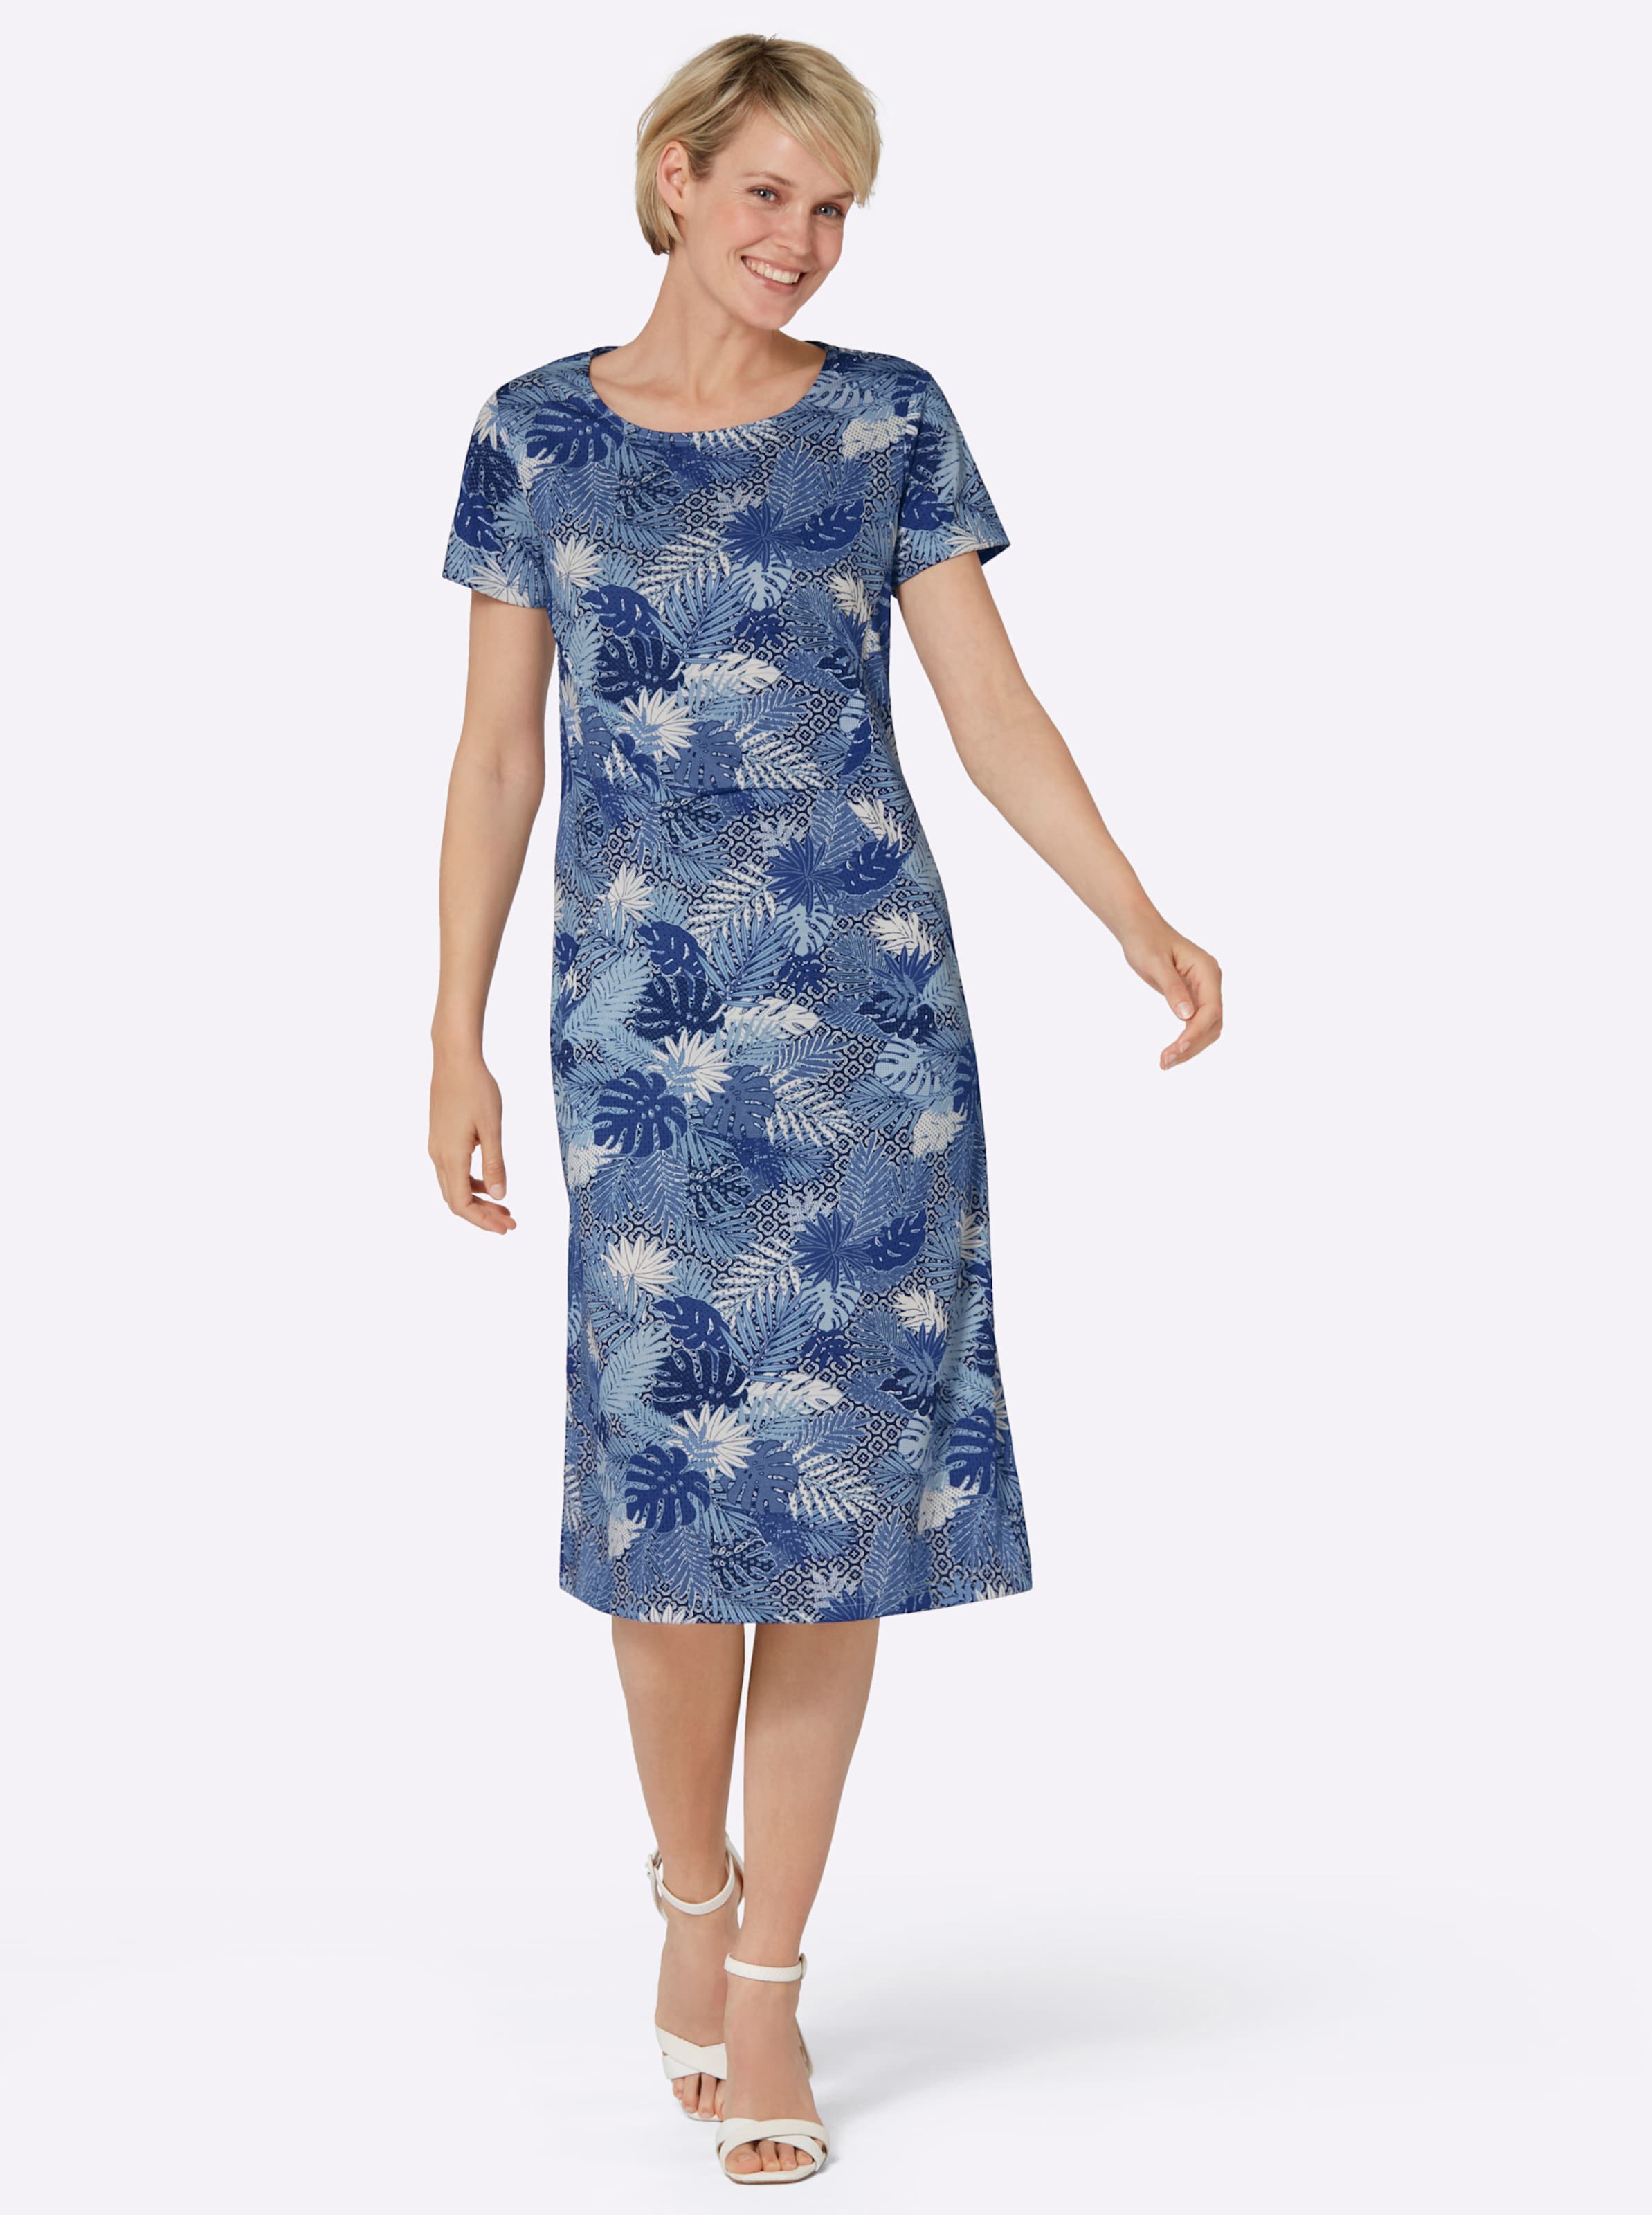 xE4;tter günstig Kaufen-Jersey-Kleid in bleu-royalblau-bedruckt von heine. Jersey-Kleid in bleu-royalblau-bedruckt von heine <![CDATA[Fällt schön und sieht zudem gut aus: Jersey-Kleid in vorteilhafter A-Linie und attraktivem Blätter-Dessin. Mit 2 Taschen. Verarbeitet mit Teil